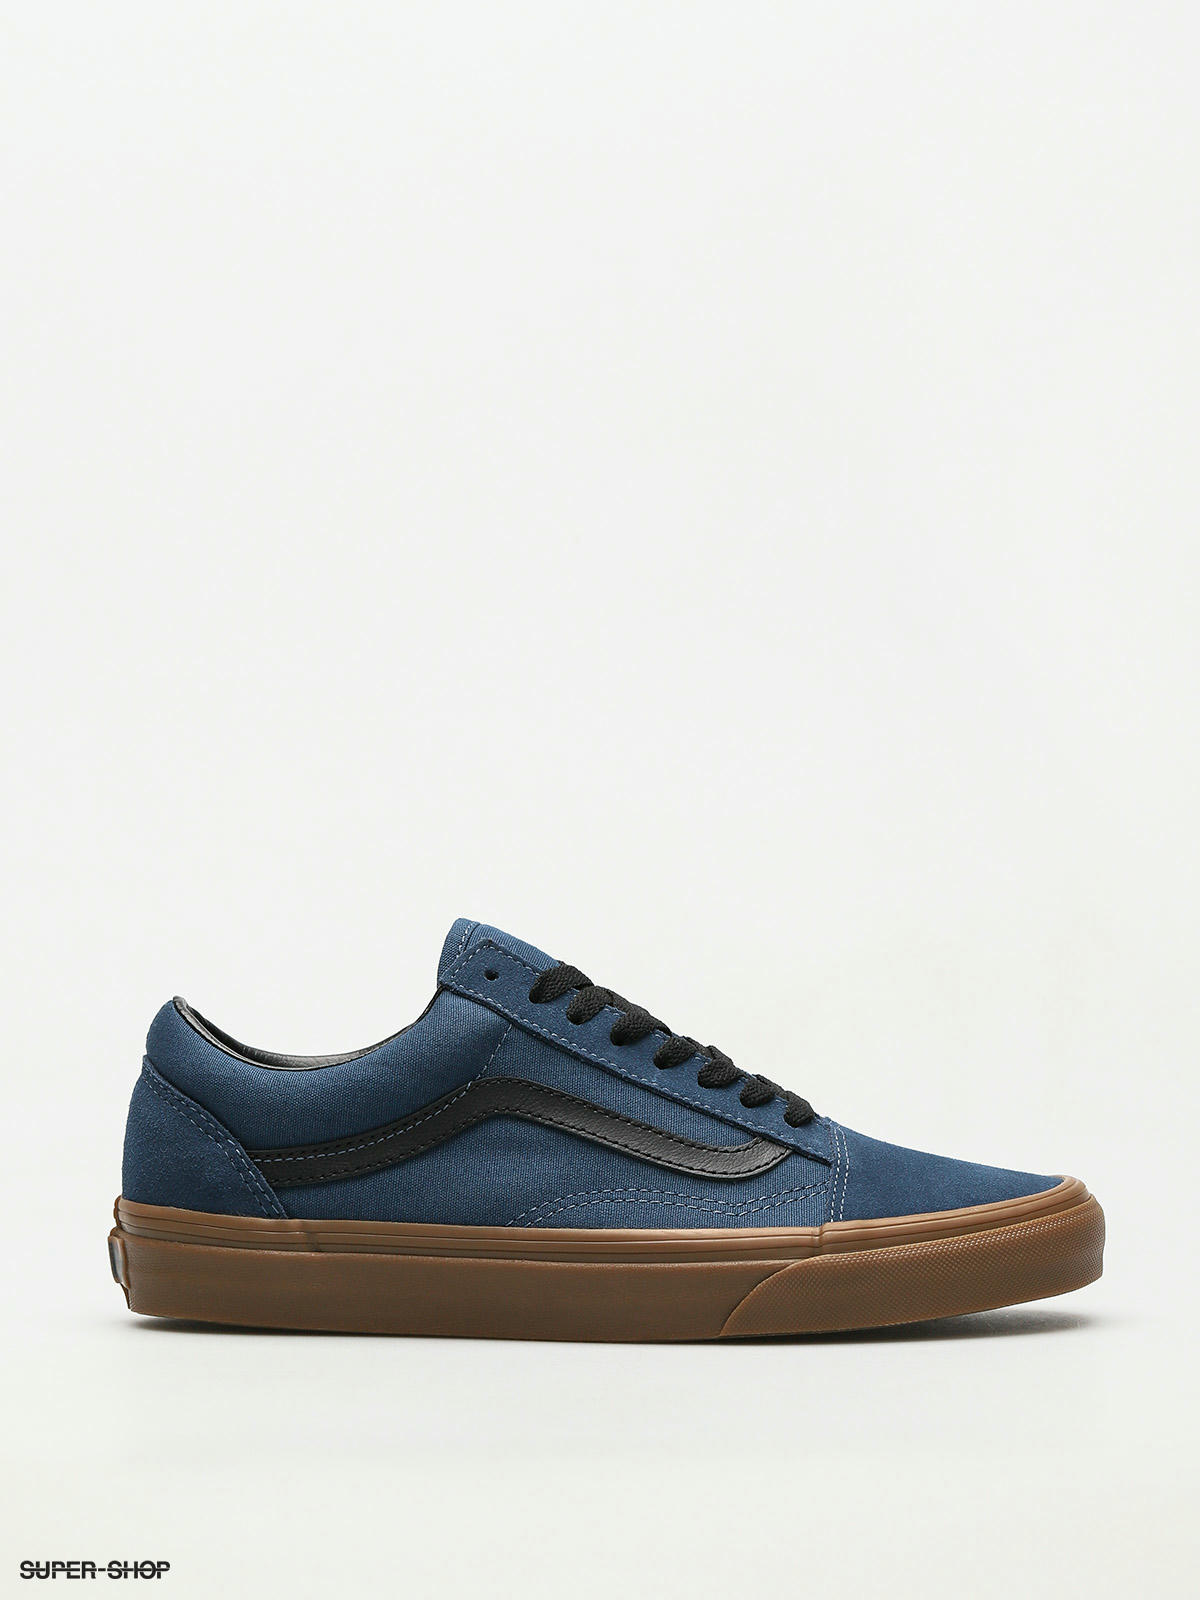 Vans Shoes & Apparel | Zappos.com